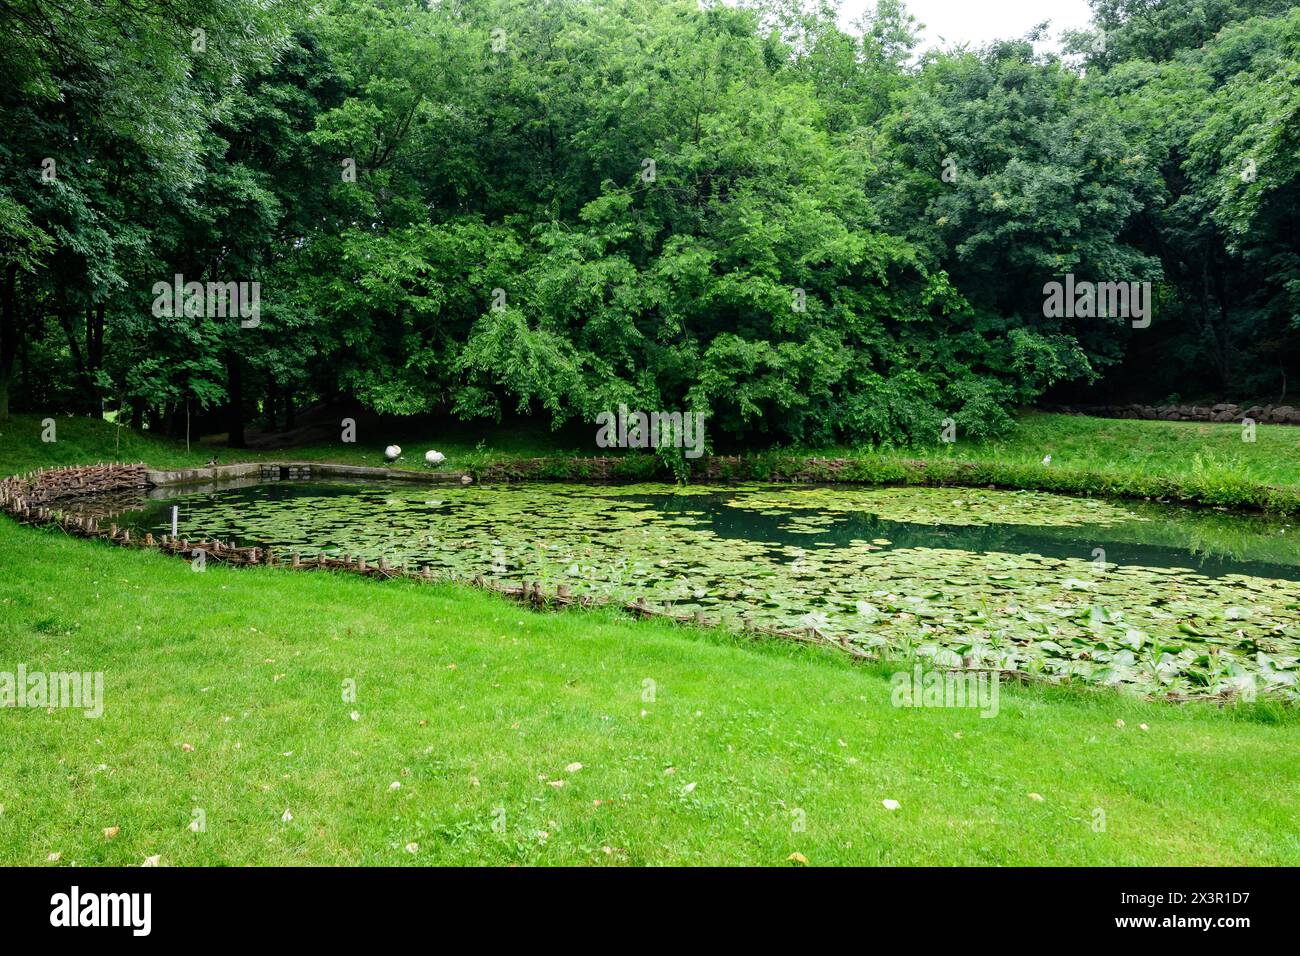 Lebendige Landschaft im Alexandru Buia Botanical Garden von Craiova in Dolj County, Rumänien, mit See, Wasserlillien und großen grünen Tres in einem wunderschönen s Stockfoto